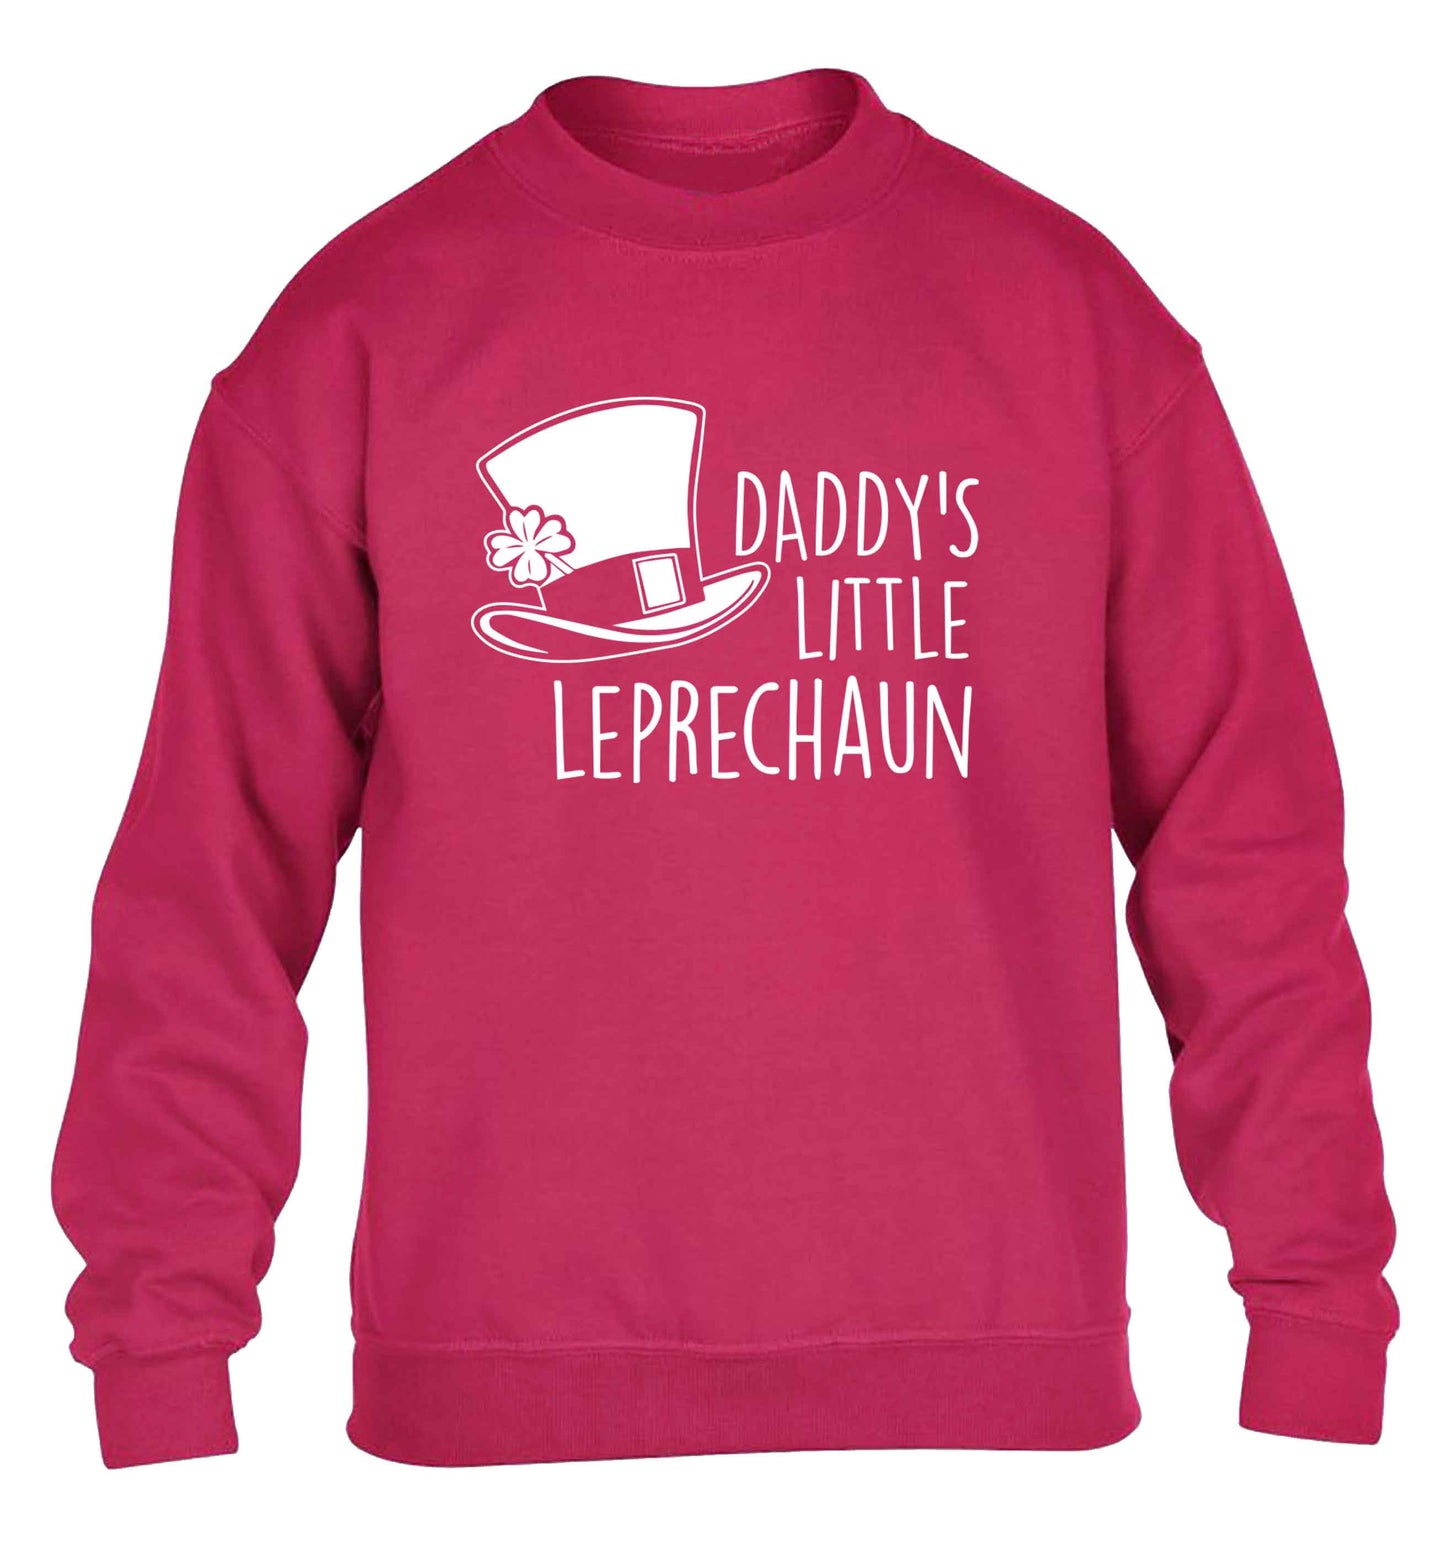 Daddy's little leprechaun children's pink sweater 12-13 Years